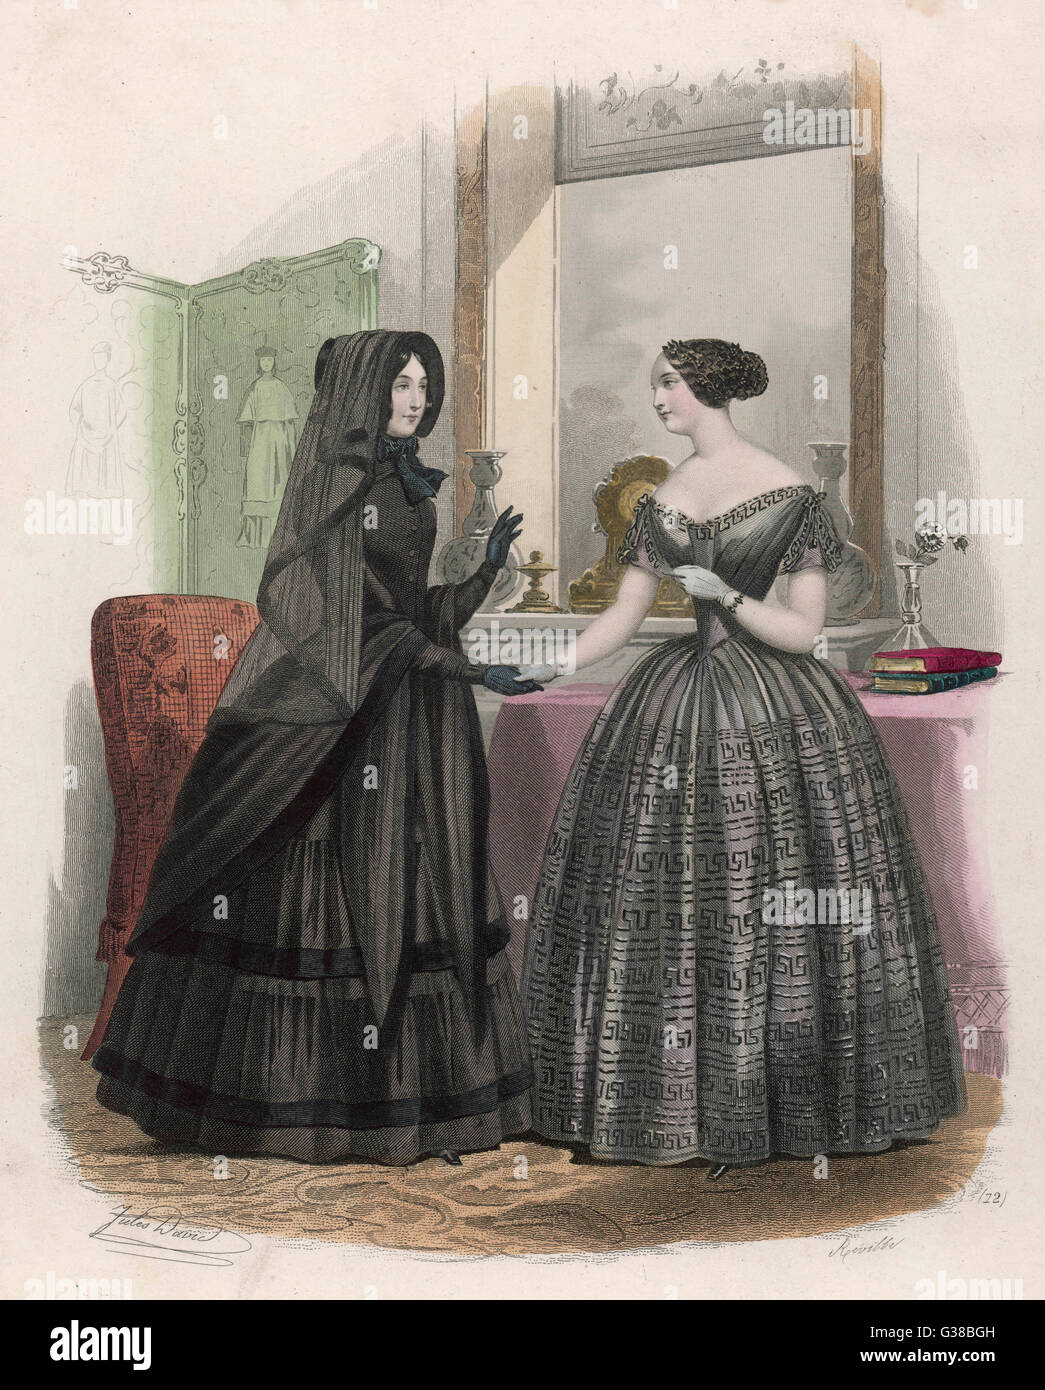 Una señora en vestido de luto exterior visita un amigo cuyo vestido de luto no escapa por una decoración discreta... Fecha: circa 1860 Foto de stock